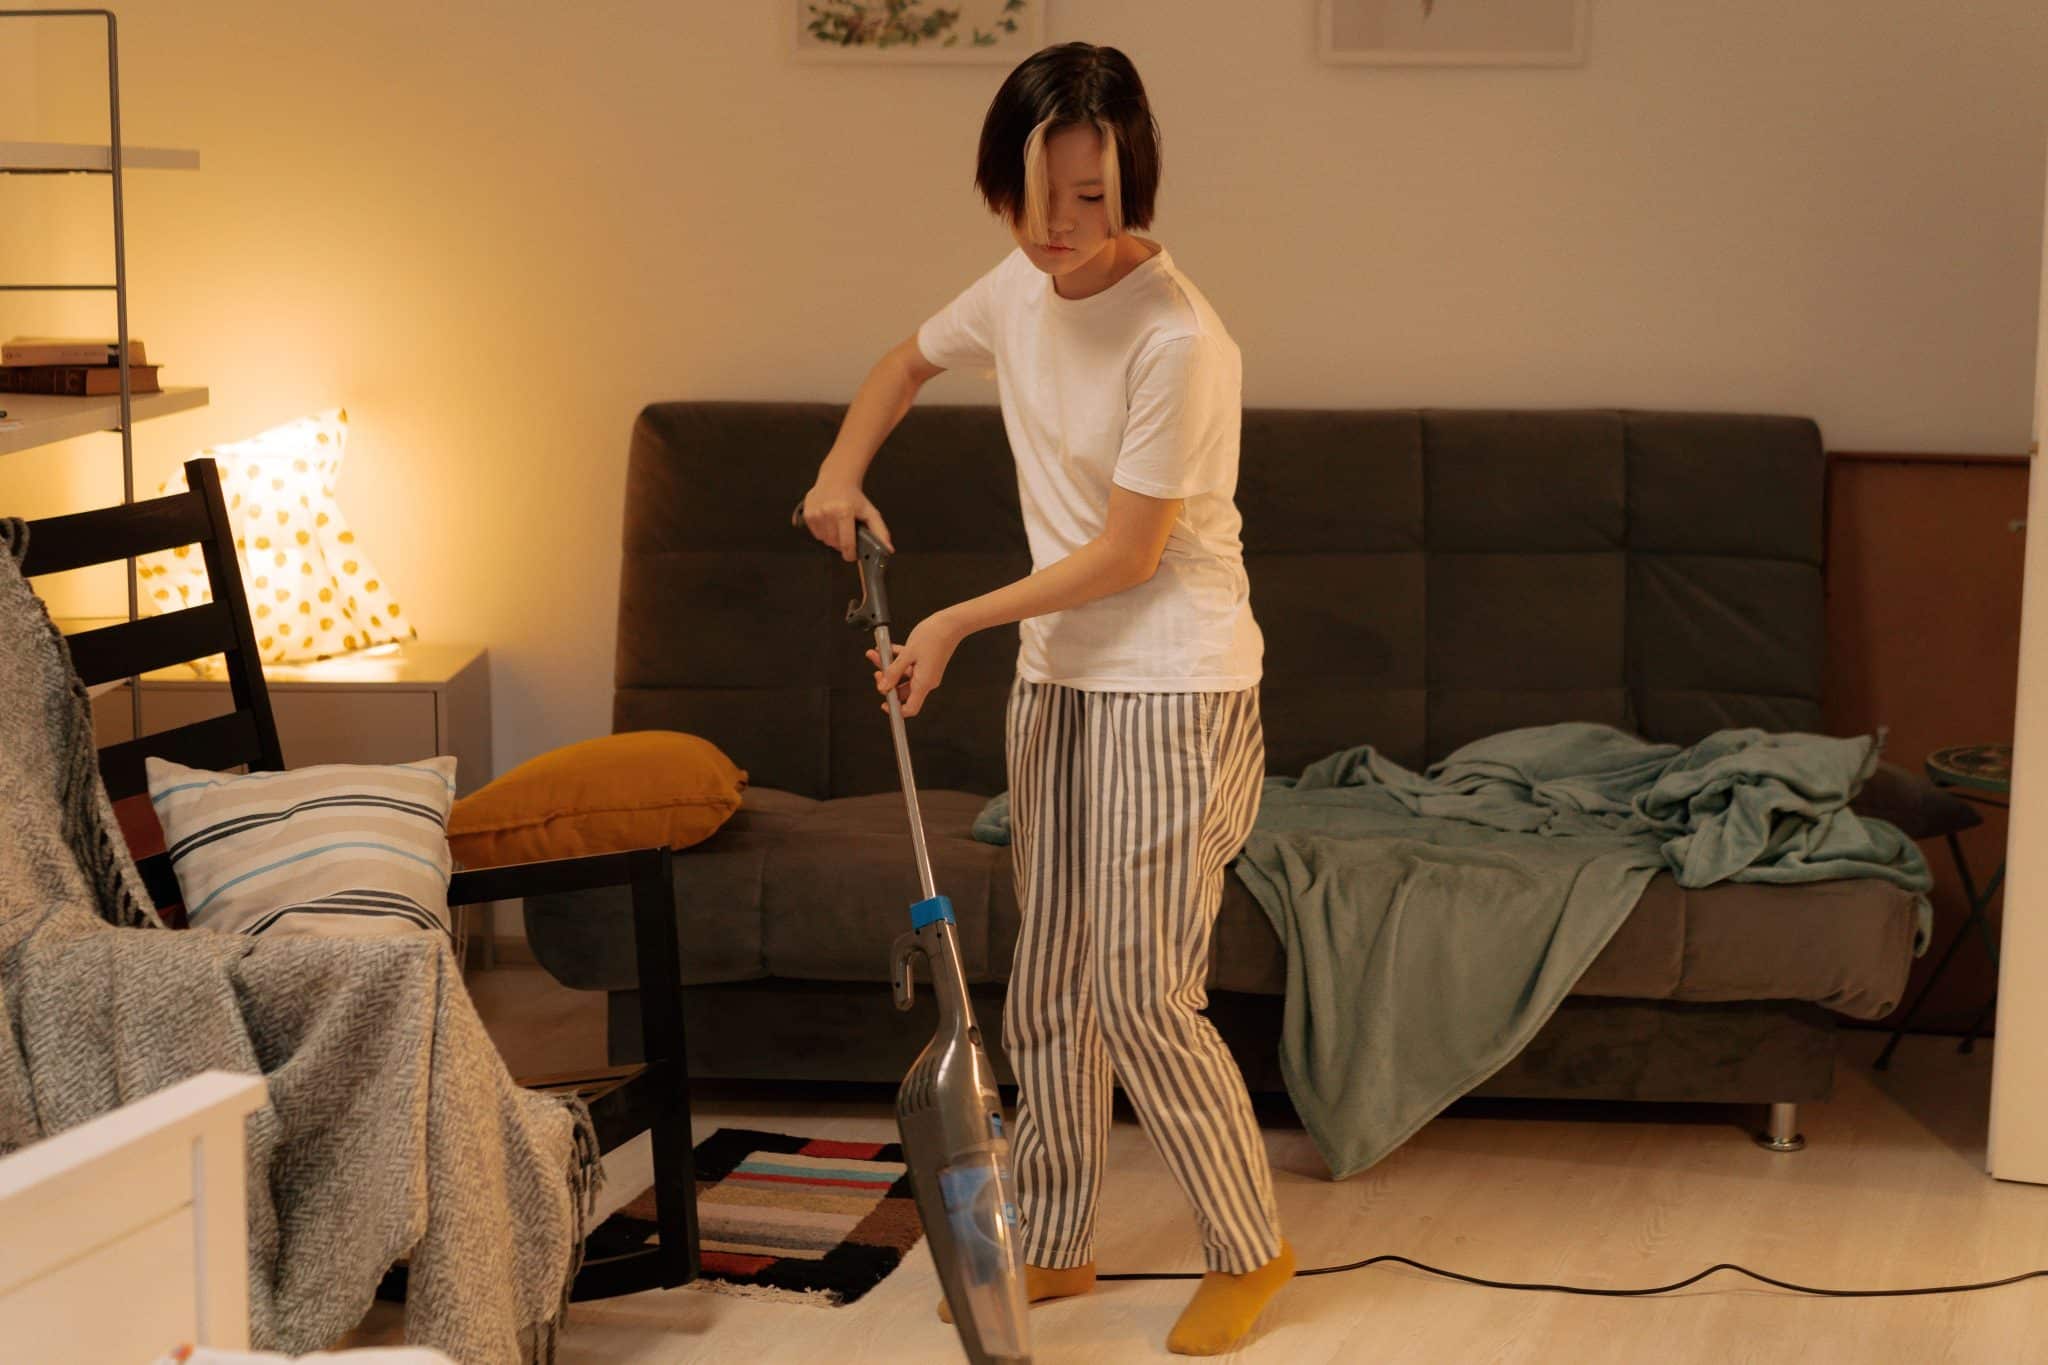 man vacuum cleaning apartment